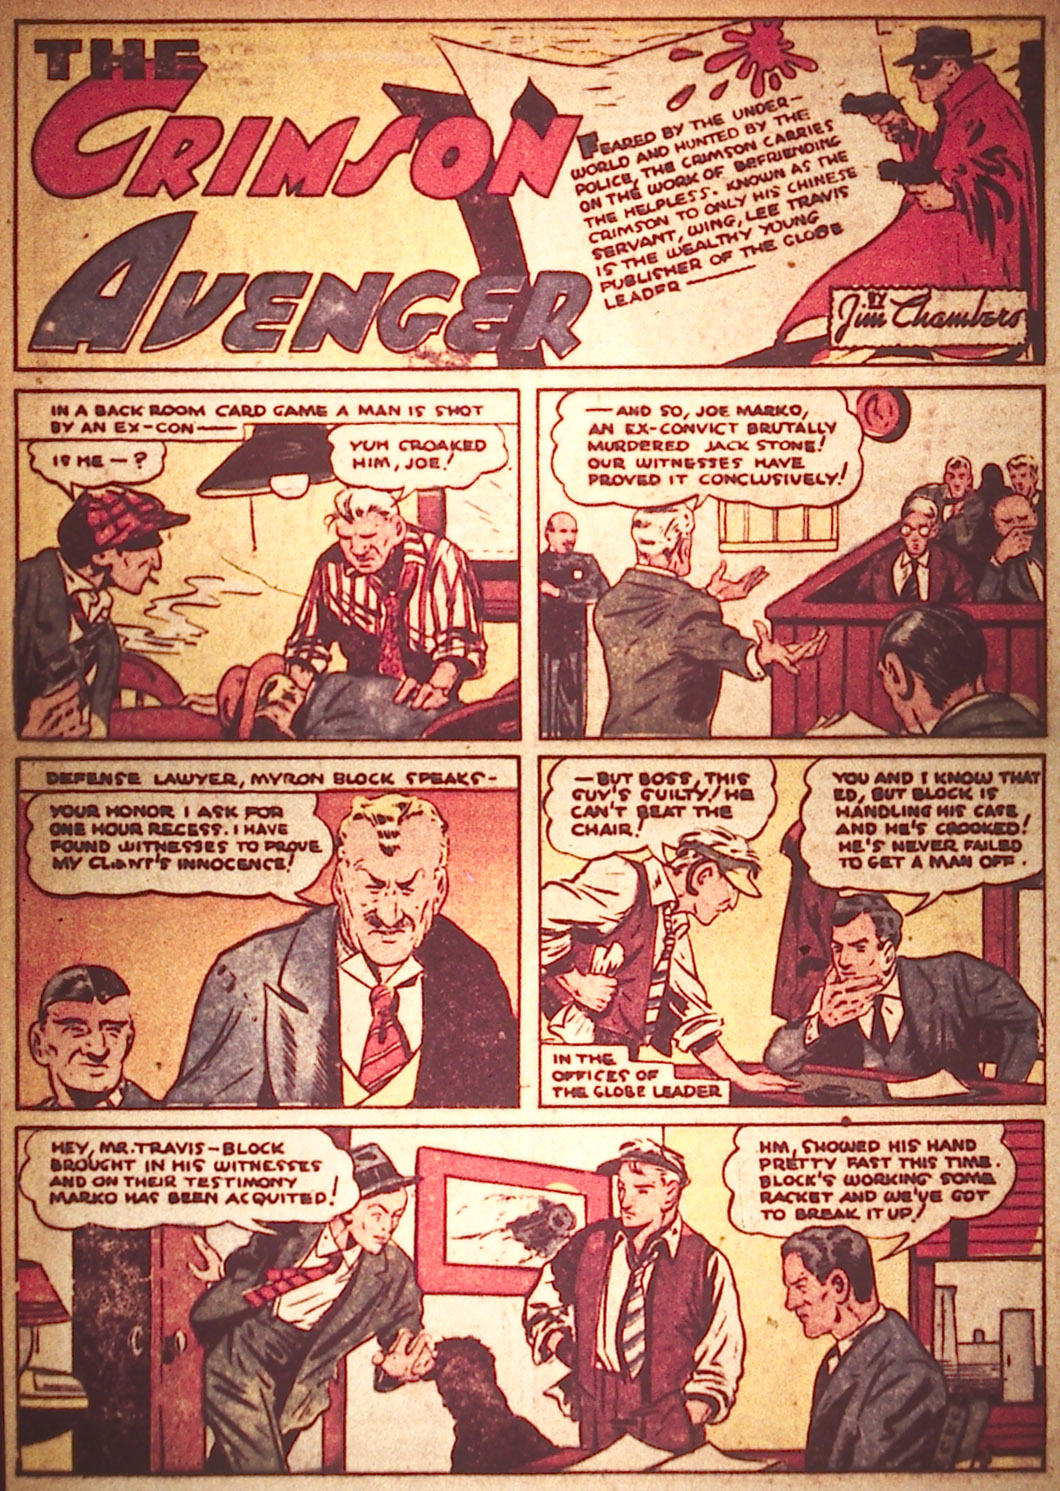 Página de Detective Comics 20 en la que vemos la presentación de The Crimson Avenger. Arriba el título y la imagen de lateral. Abajo vemos su punto de partida.